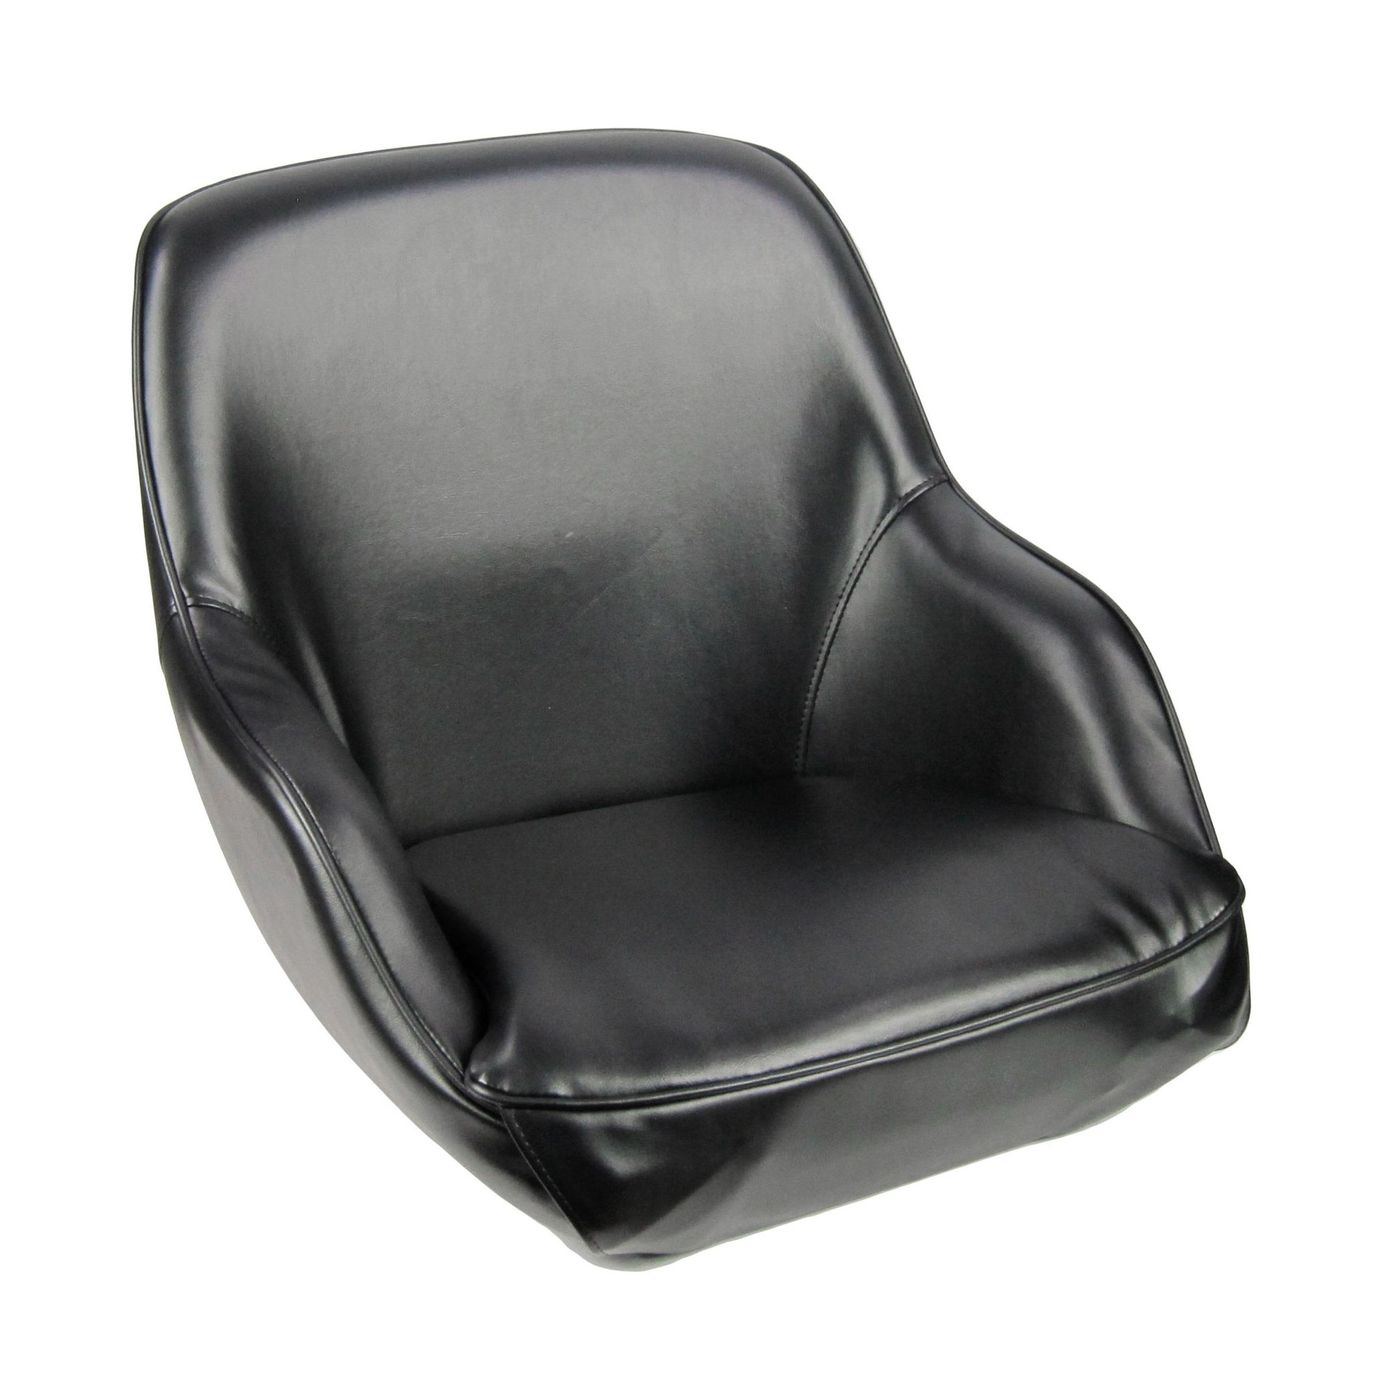 Кресло ADMIRAL мягкое, материал черный винил 1061420990 кресло ozark мягкое черный темно серый 1043224